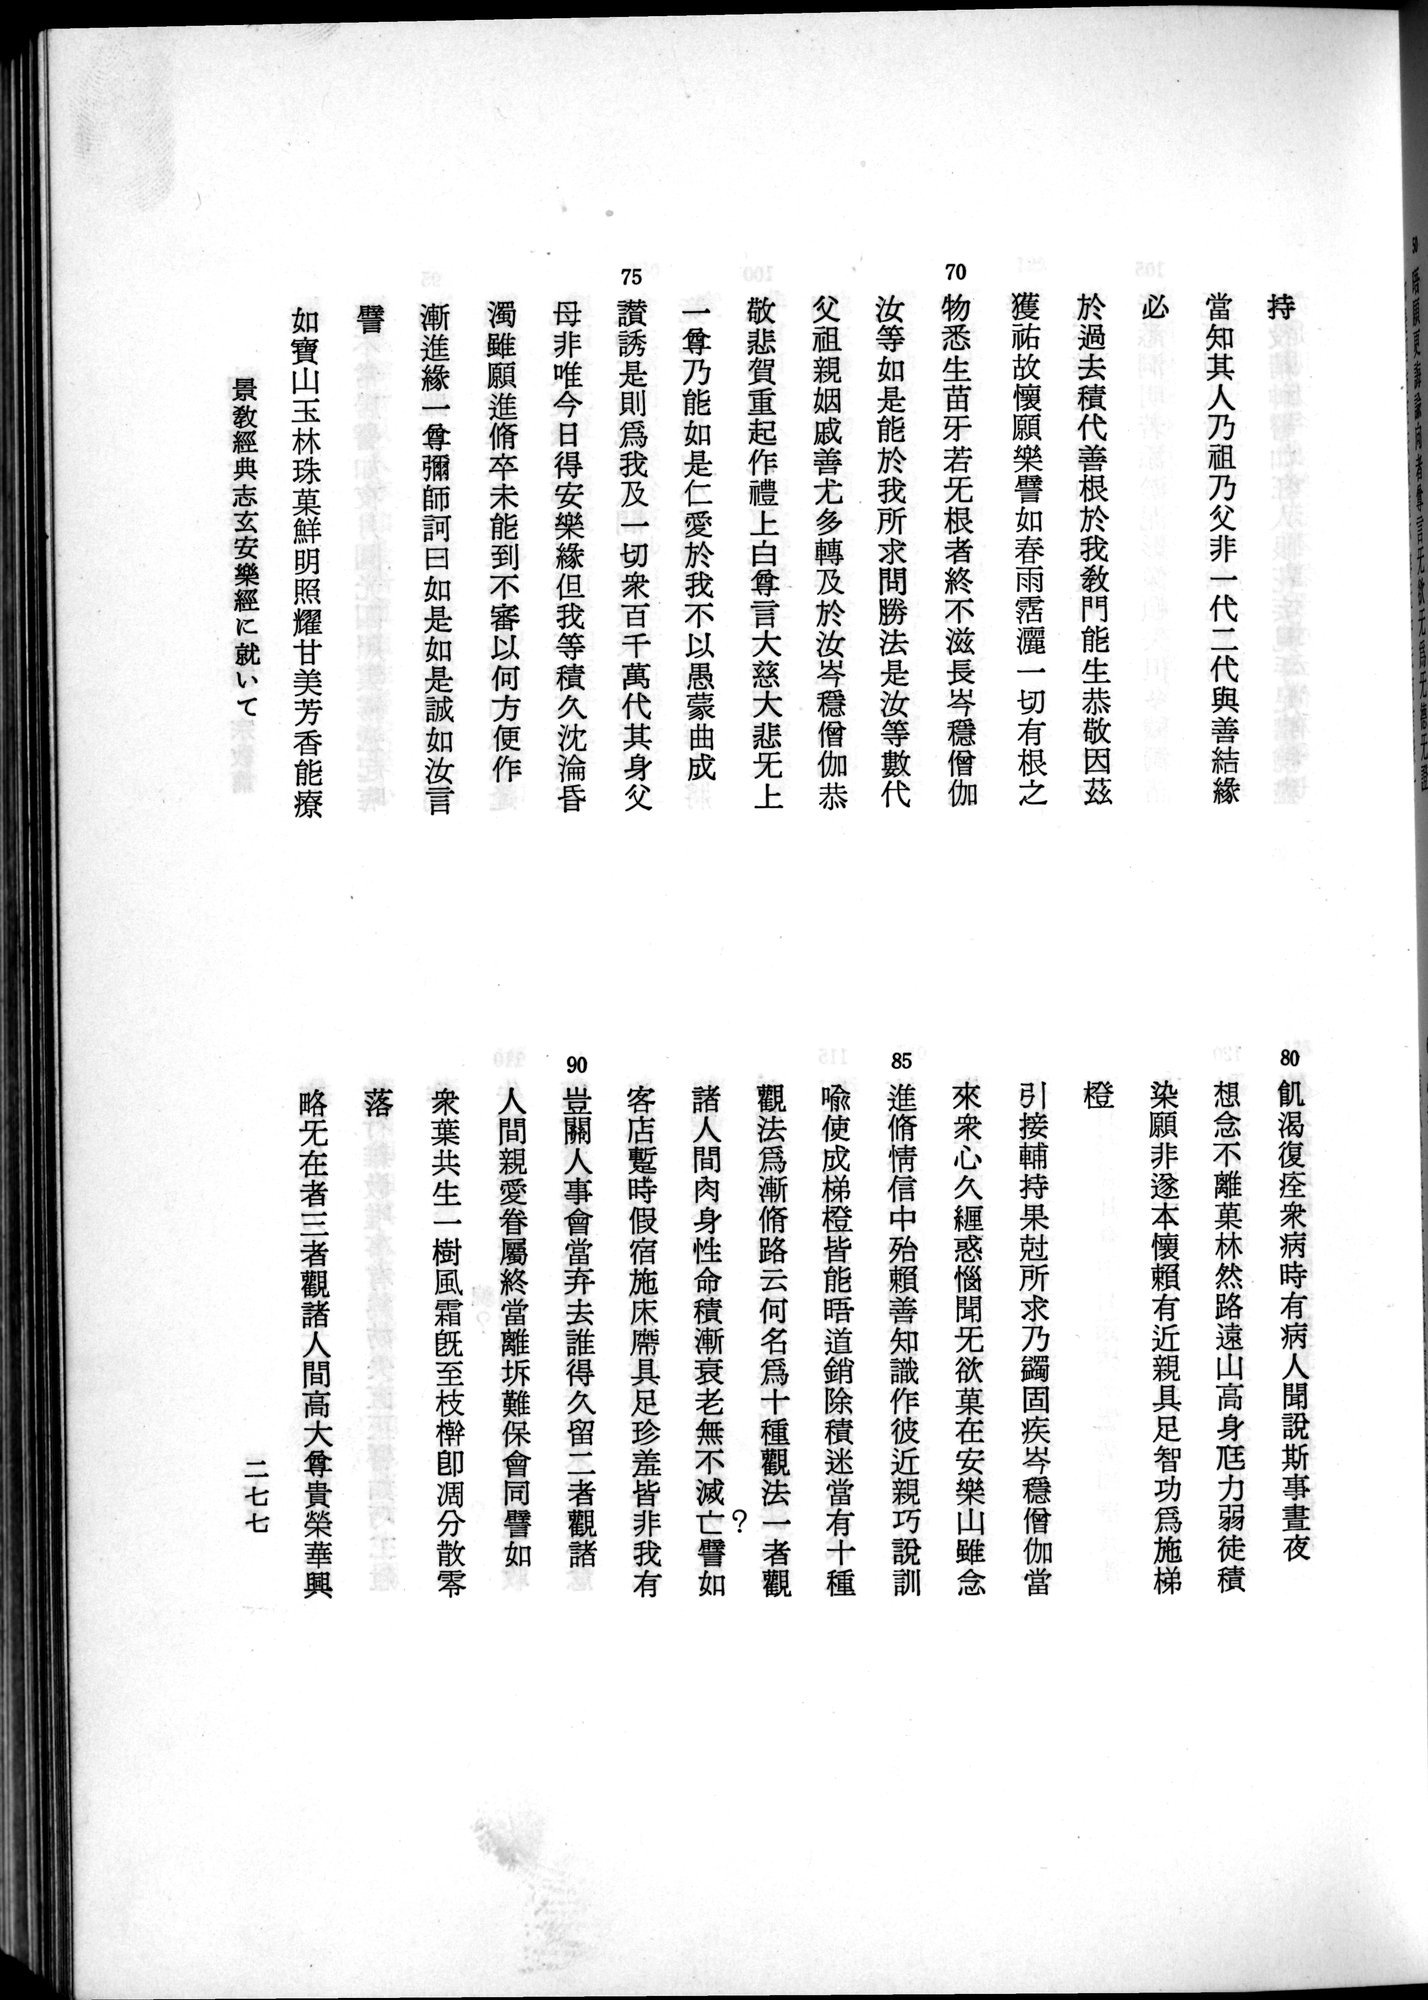 羽田博士史学論文集 : vol.2 / Page 339 (Grayscale High Resolution Image)